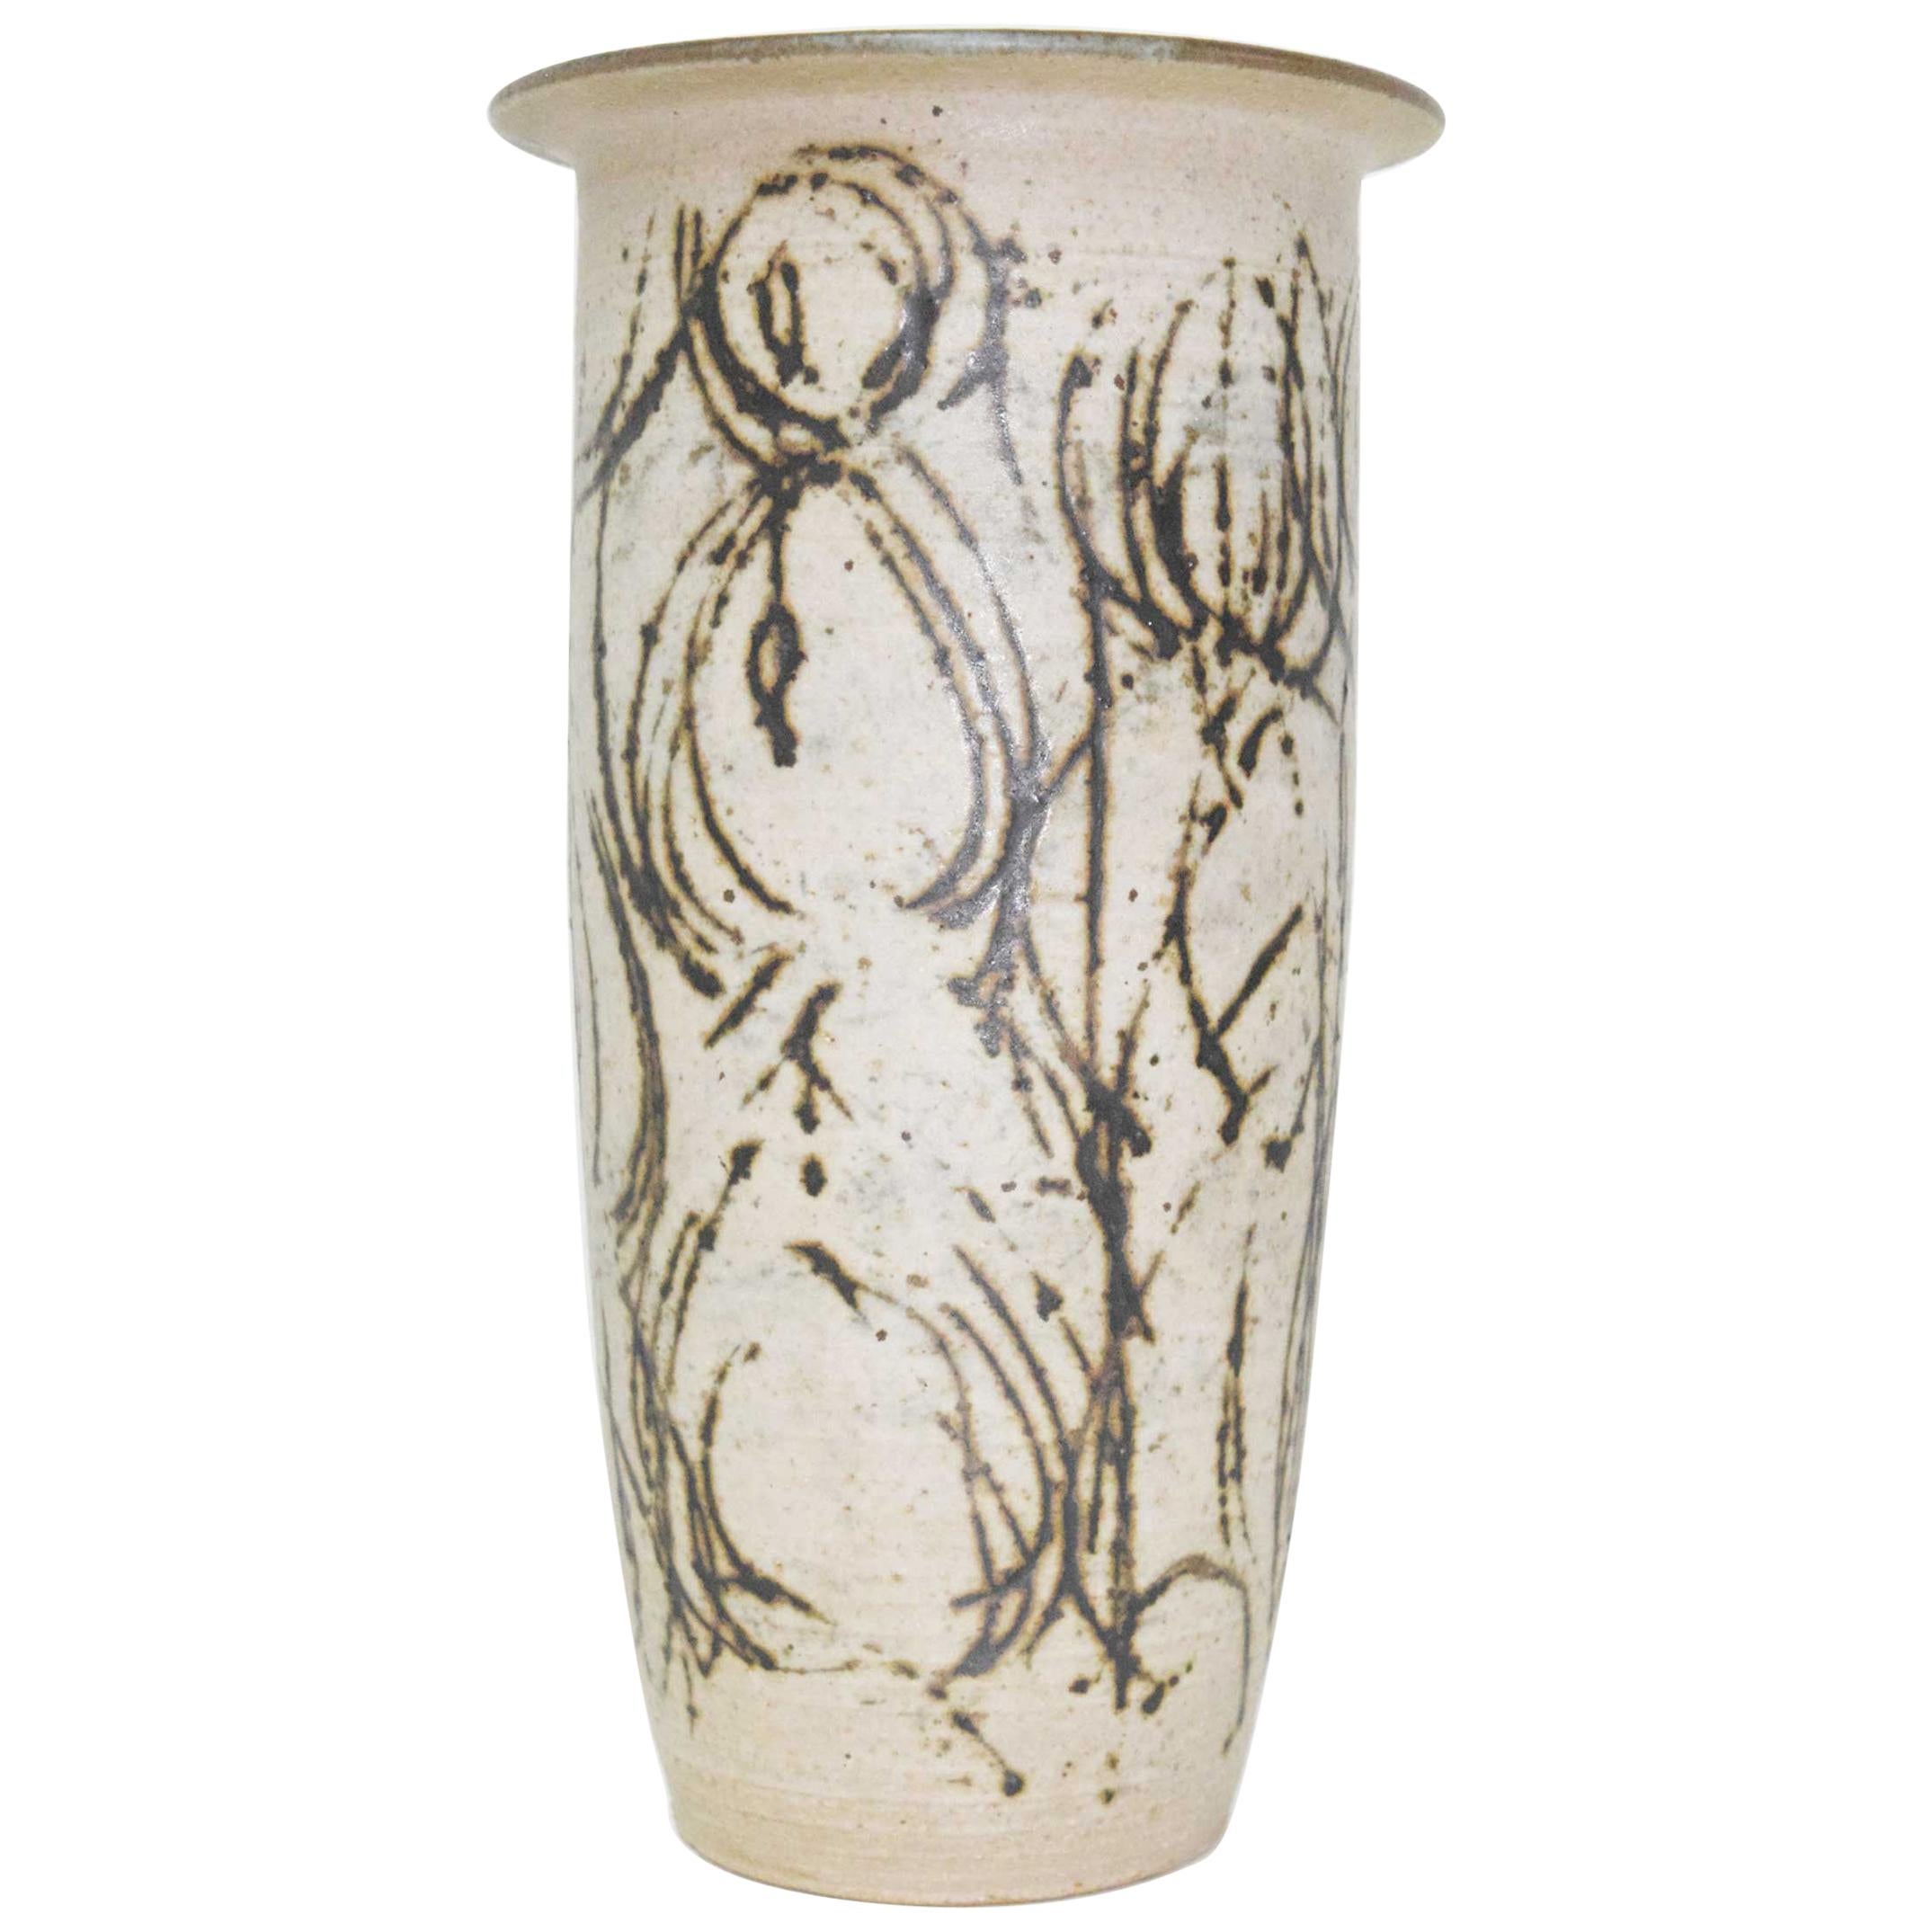 Clyde Burt - Grand vase en céramique avec motif abstrait